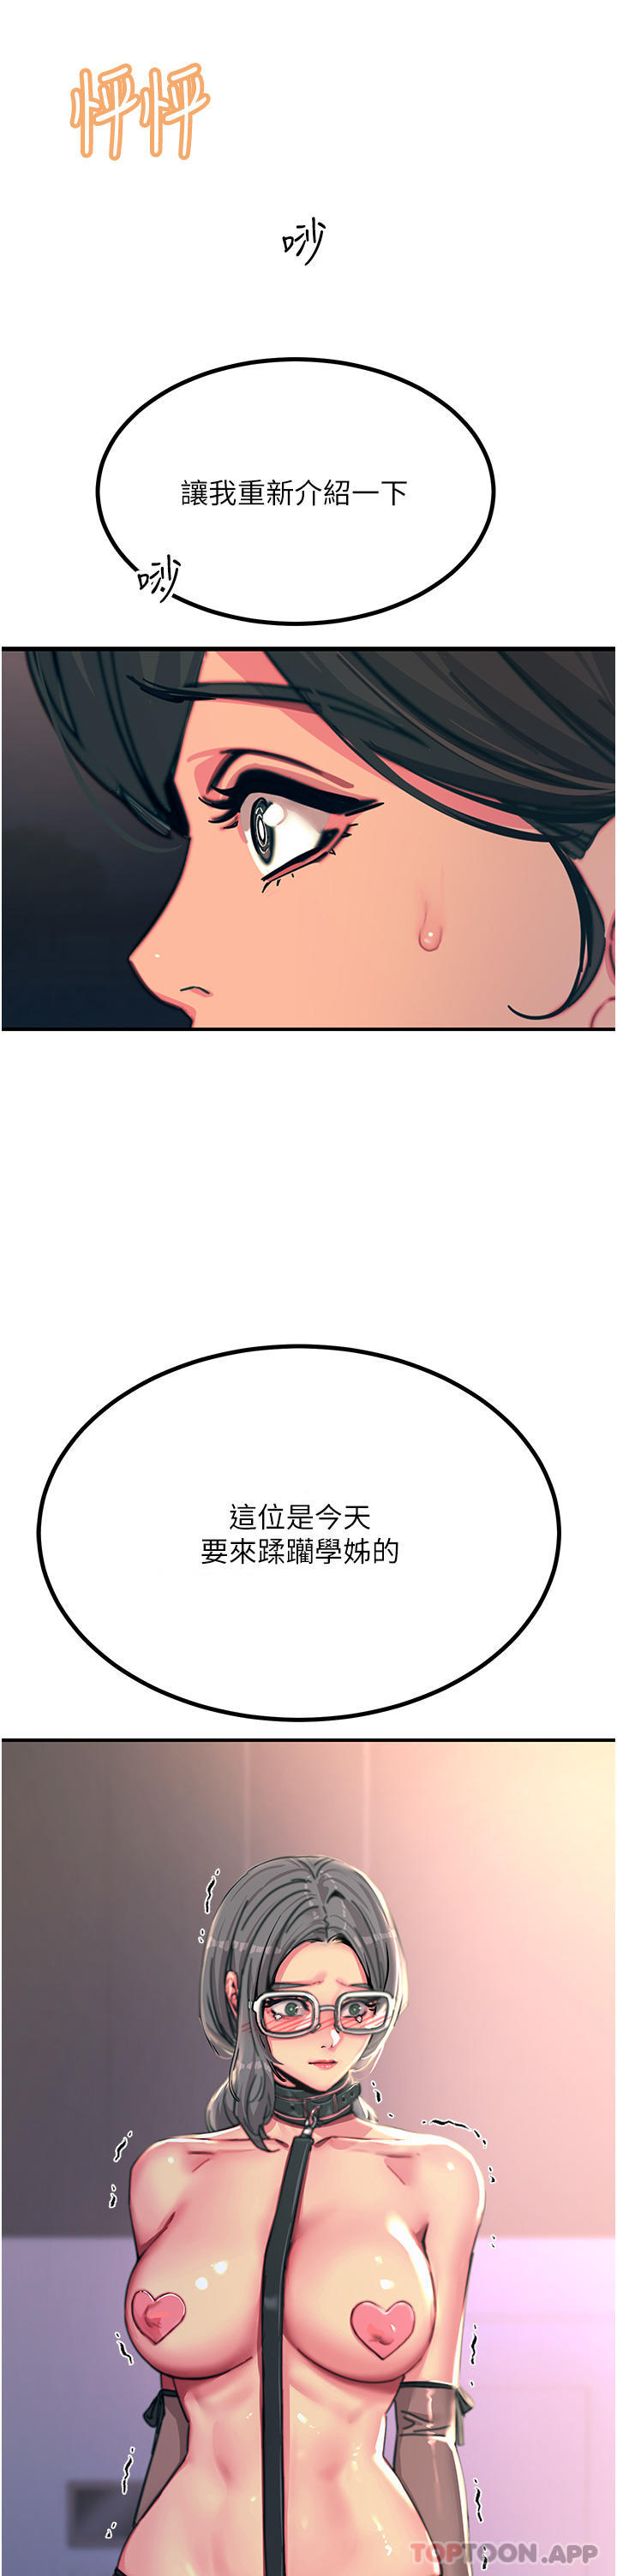 韩国污漫画 觸電大師 第45话抗拒不了的巨雕诱惑 48